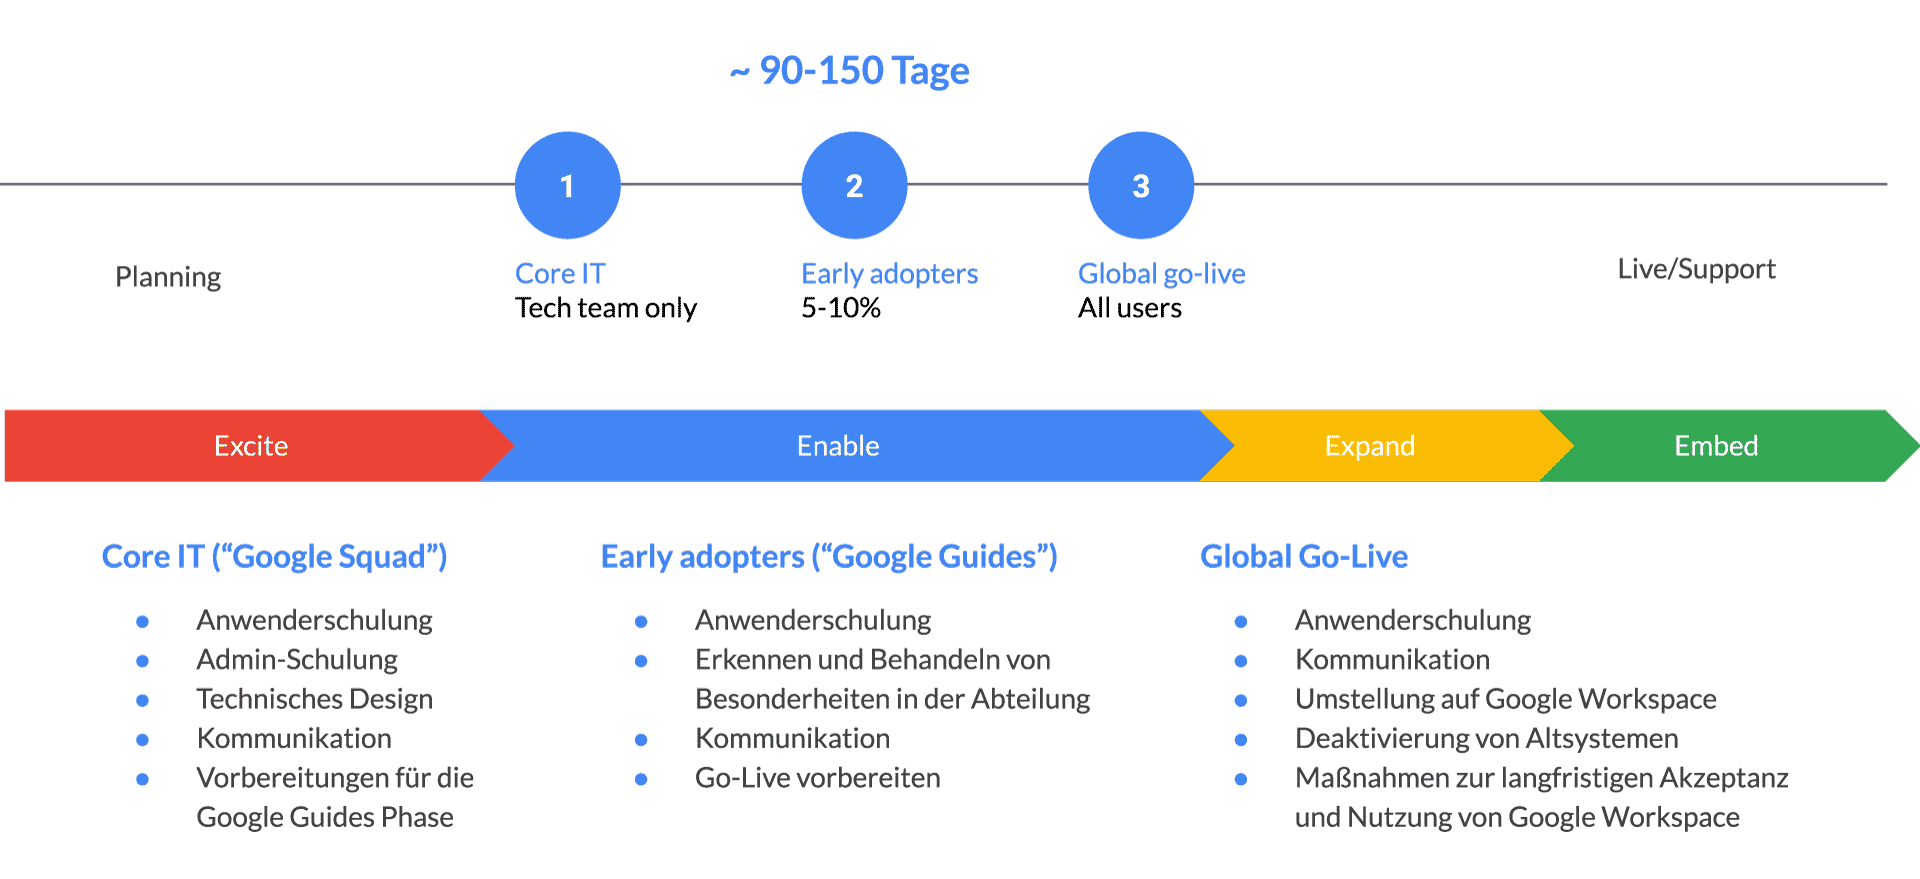 Darstellung des dreistufigen Deployments, in dem zuerst die Core IT und dann die Early Adopters einbezogen werden, bevor es im dritten Schritt zum globalen Go-Live kommt.